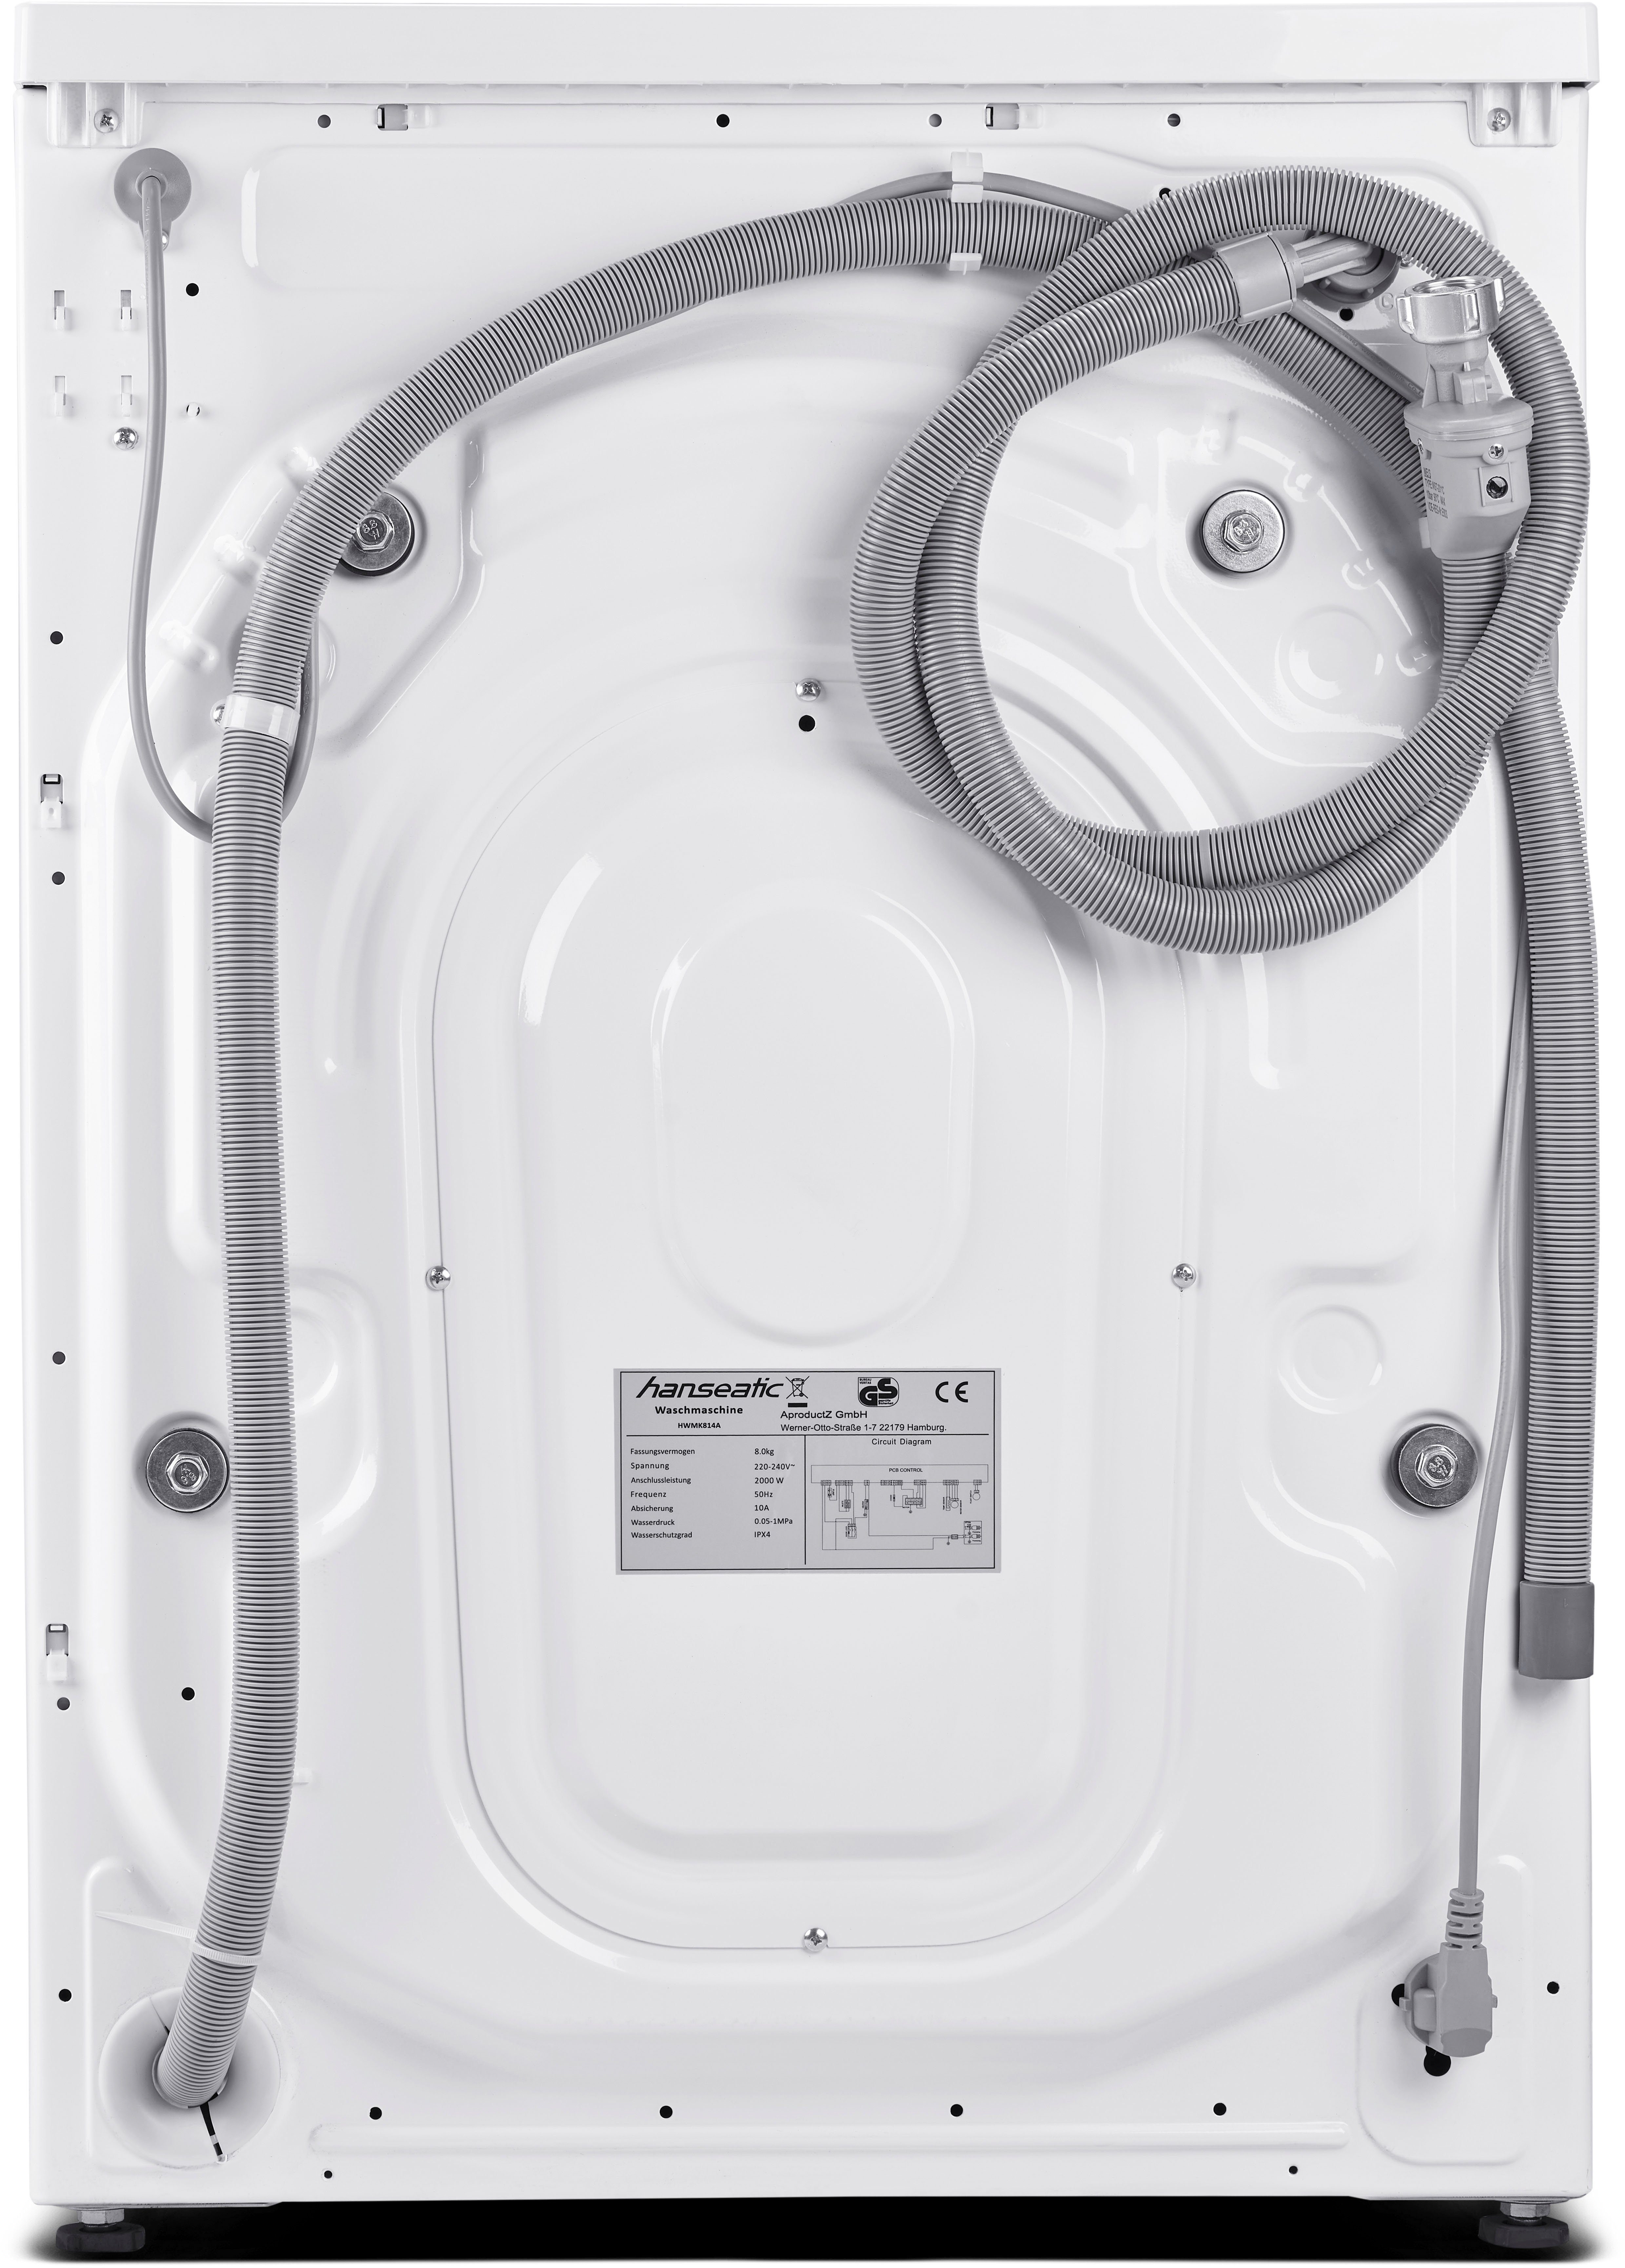 HWMK814A, Hanseatic Nachtwaschprogramm, 1400 8 Mengenautomatik, U/min, Dampfoption Waschmaschine Überlaufschutz, kg,